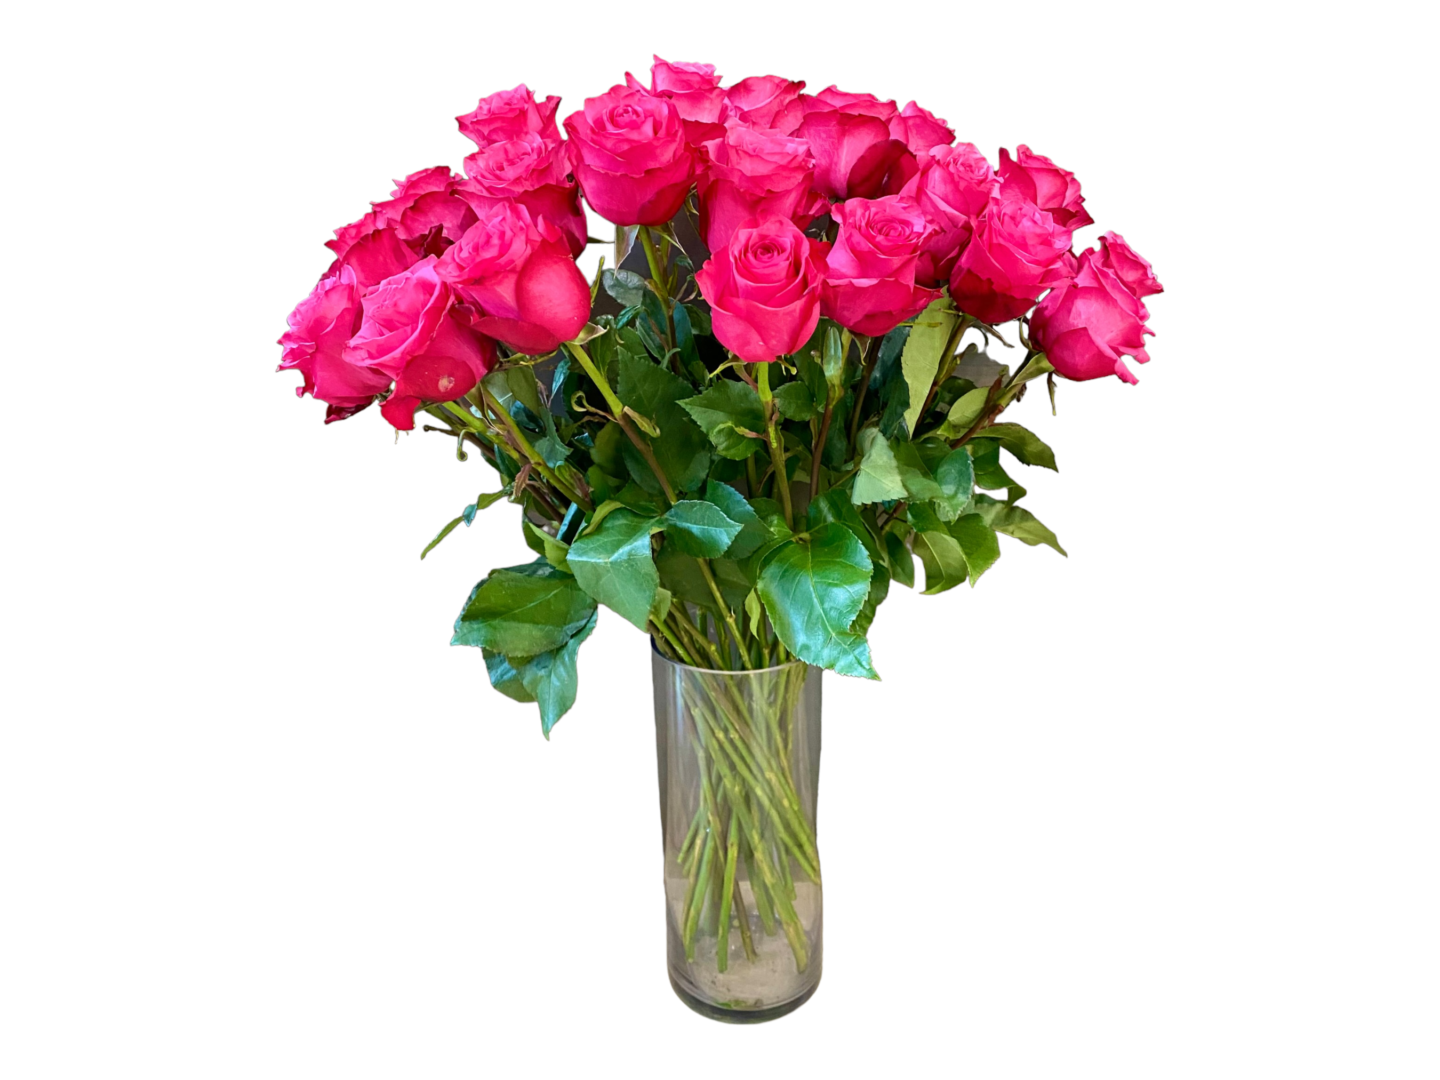 24 hot explorer roses arrangement on a vase